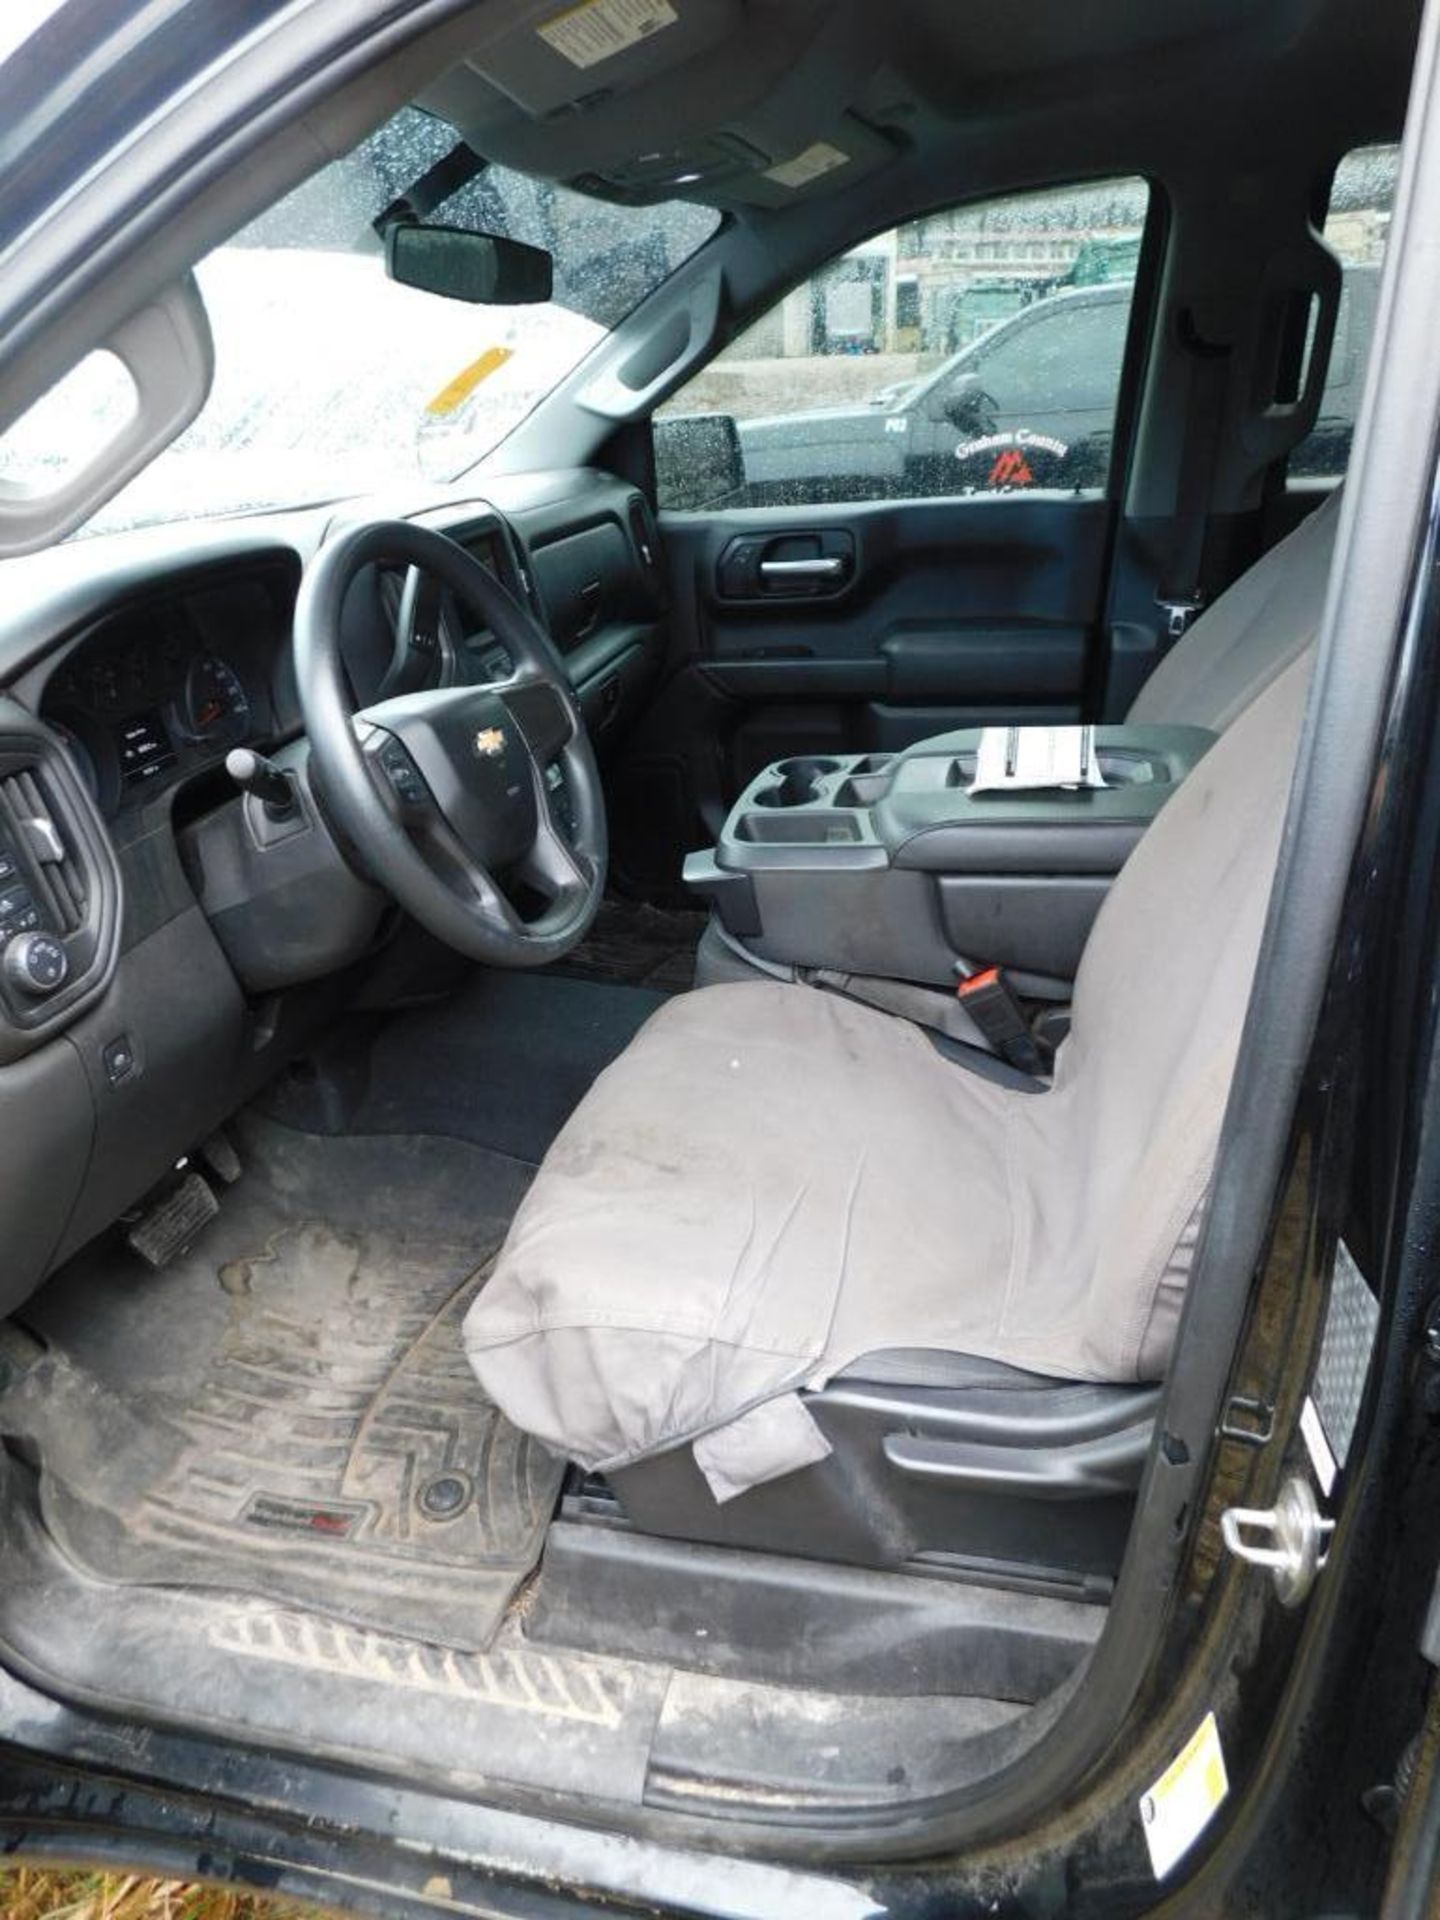 2019 Chevy Silverado 1500 Custom Crew Cab, 4-Wheel Drive, 5.3 Liter, Ecotec 3, V8 Gasoline Motor, Au - Image 12 of 12